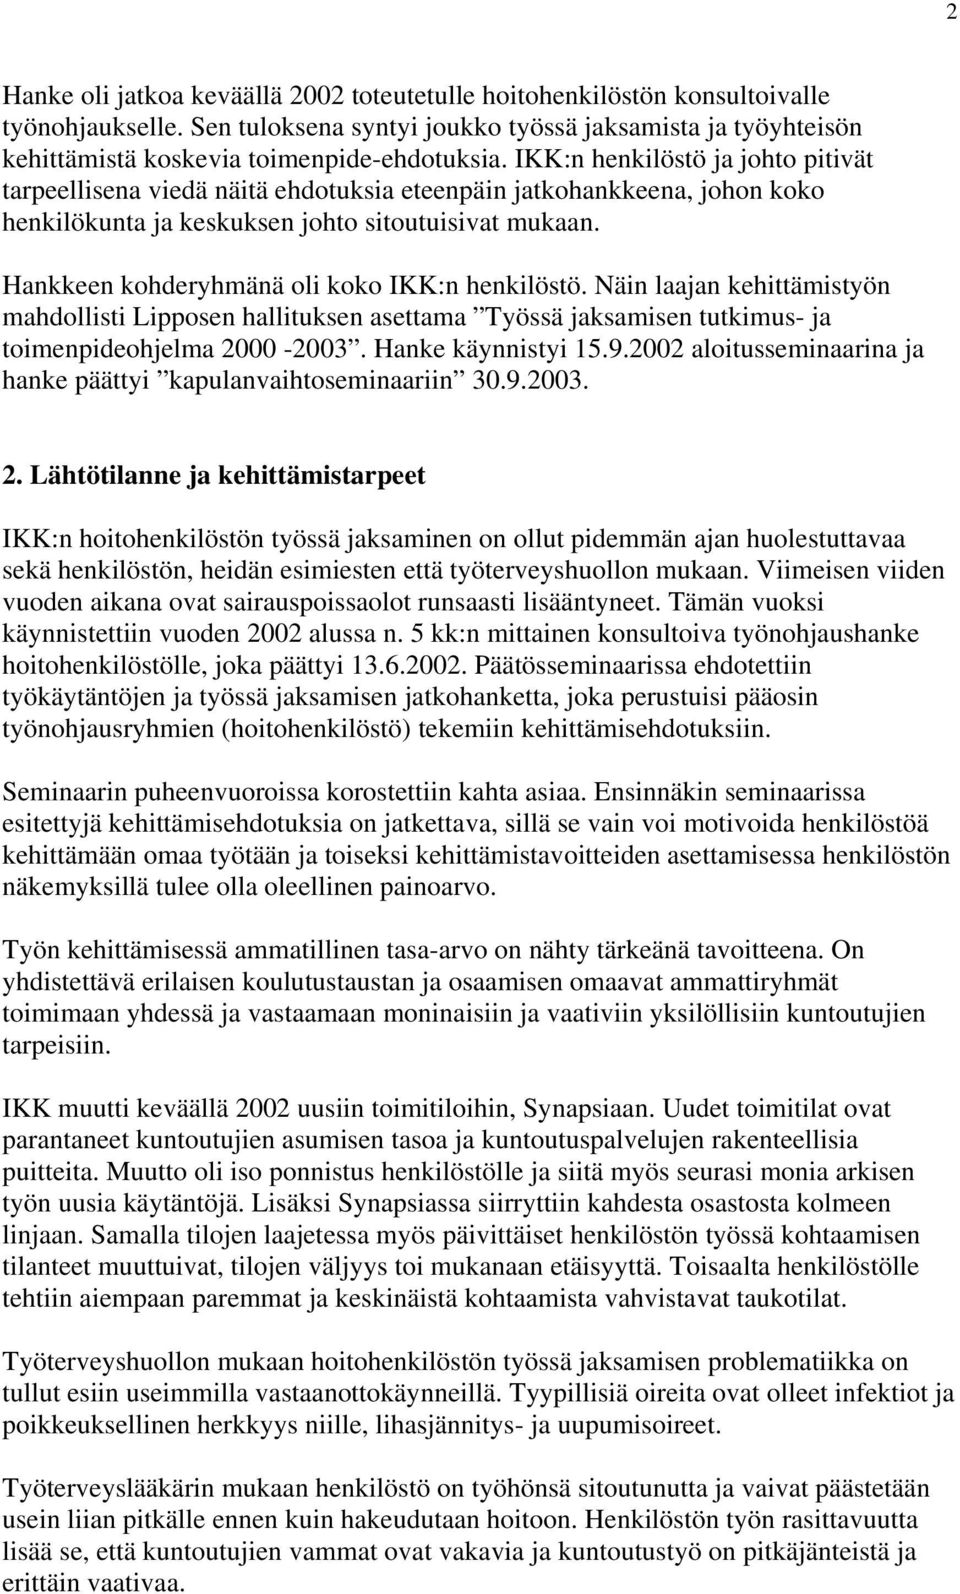 Hankkeen kohderyhmänä oli koko IKK:n henkilöstö. Näin laajan kehittämistyön mahdollisti Lipposen hallituksen asettama Työssä jaksamisen tutkimus- ja toimenpideohjelma 2000-2003. Hanke käynnistyi 15.9.